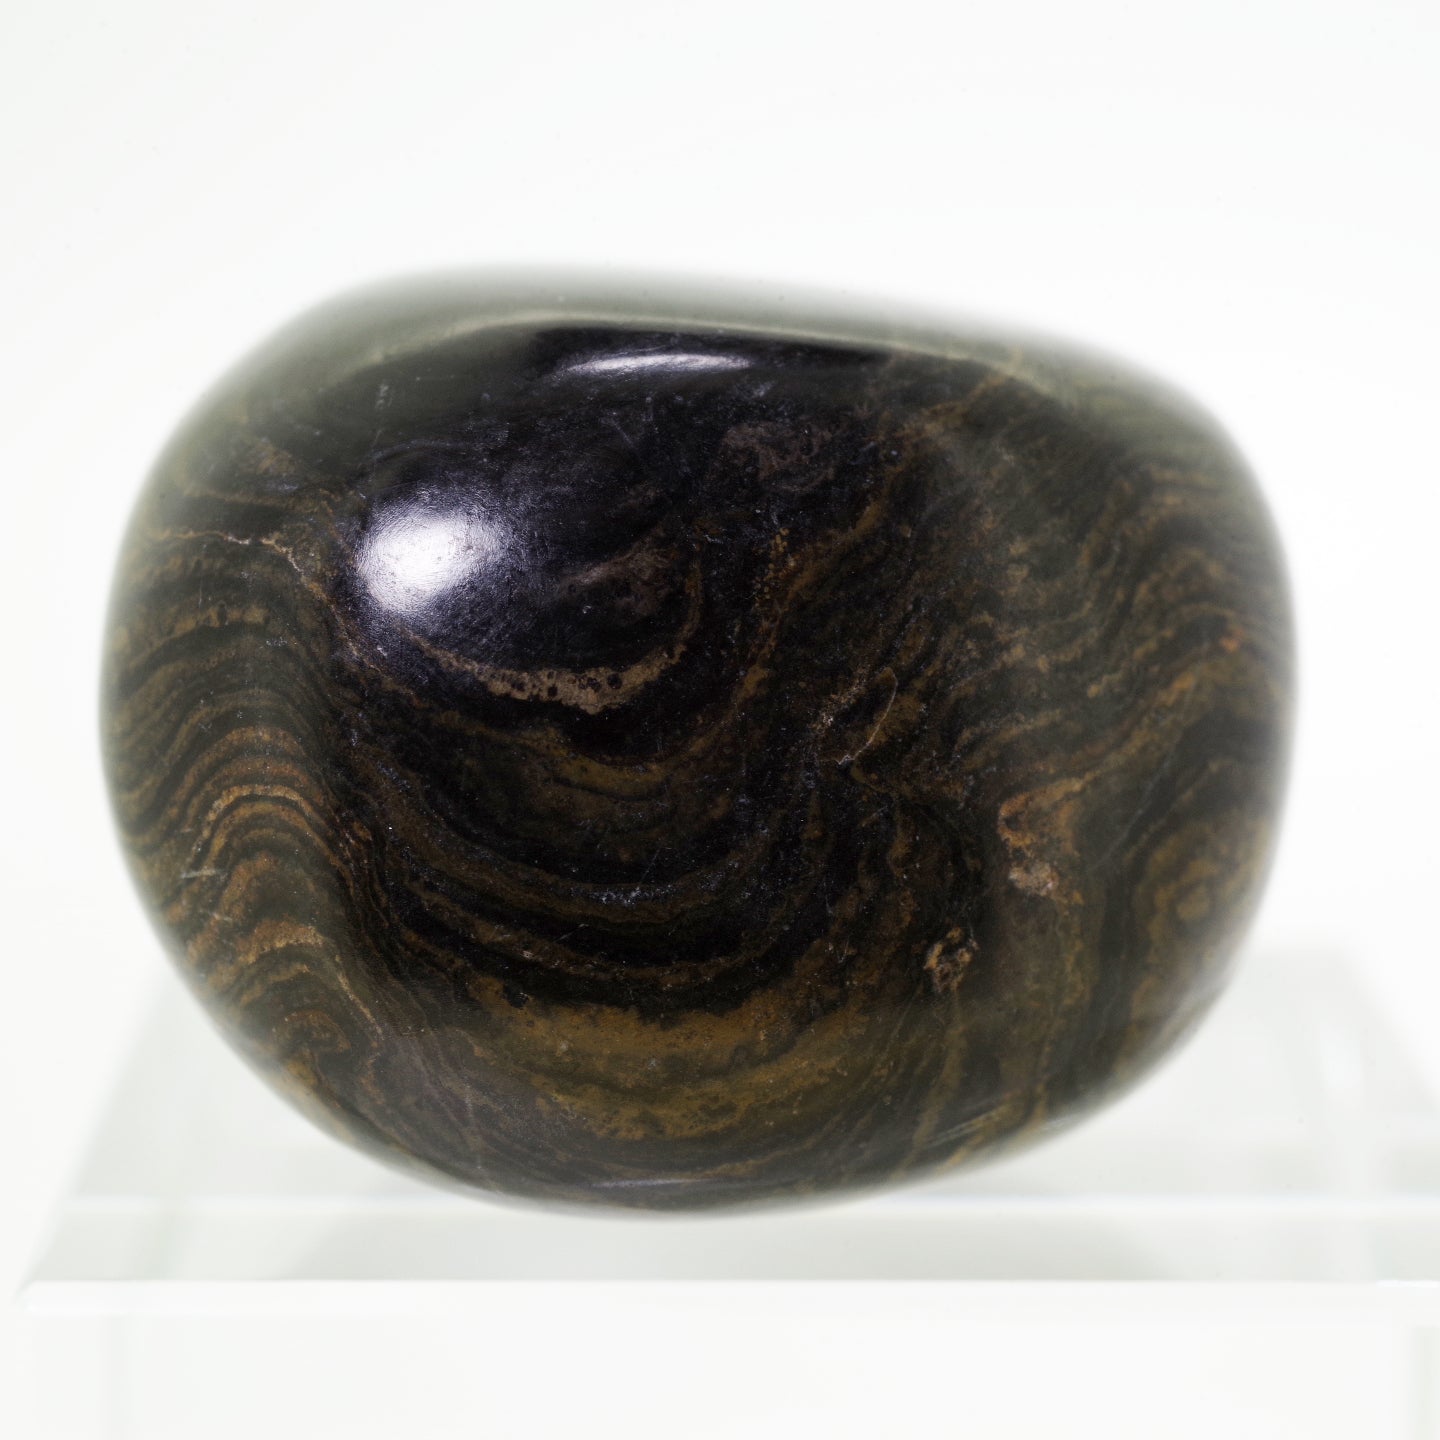 ストロマトライト3 ボリビア産  Stromatolite Bolivia 写真現物 動画あり